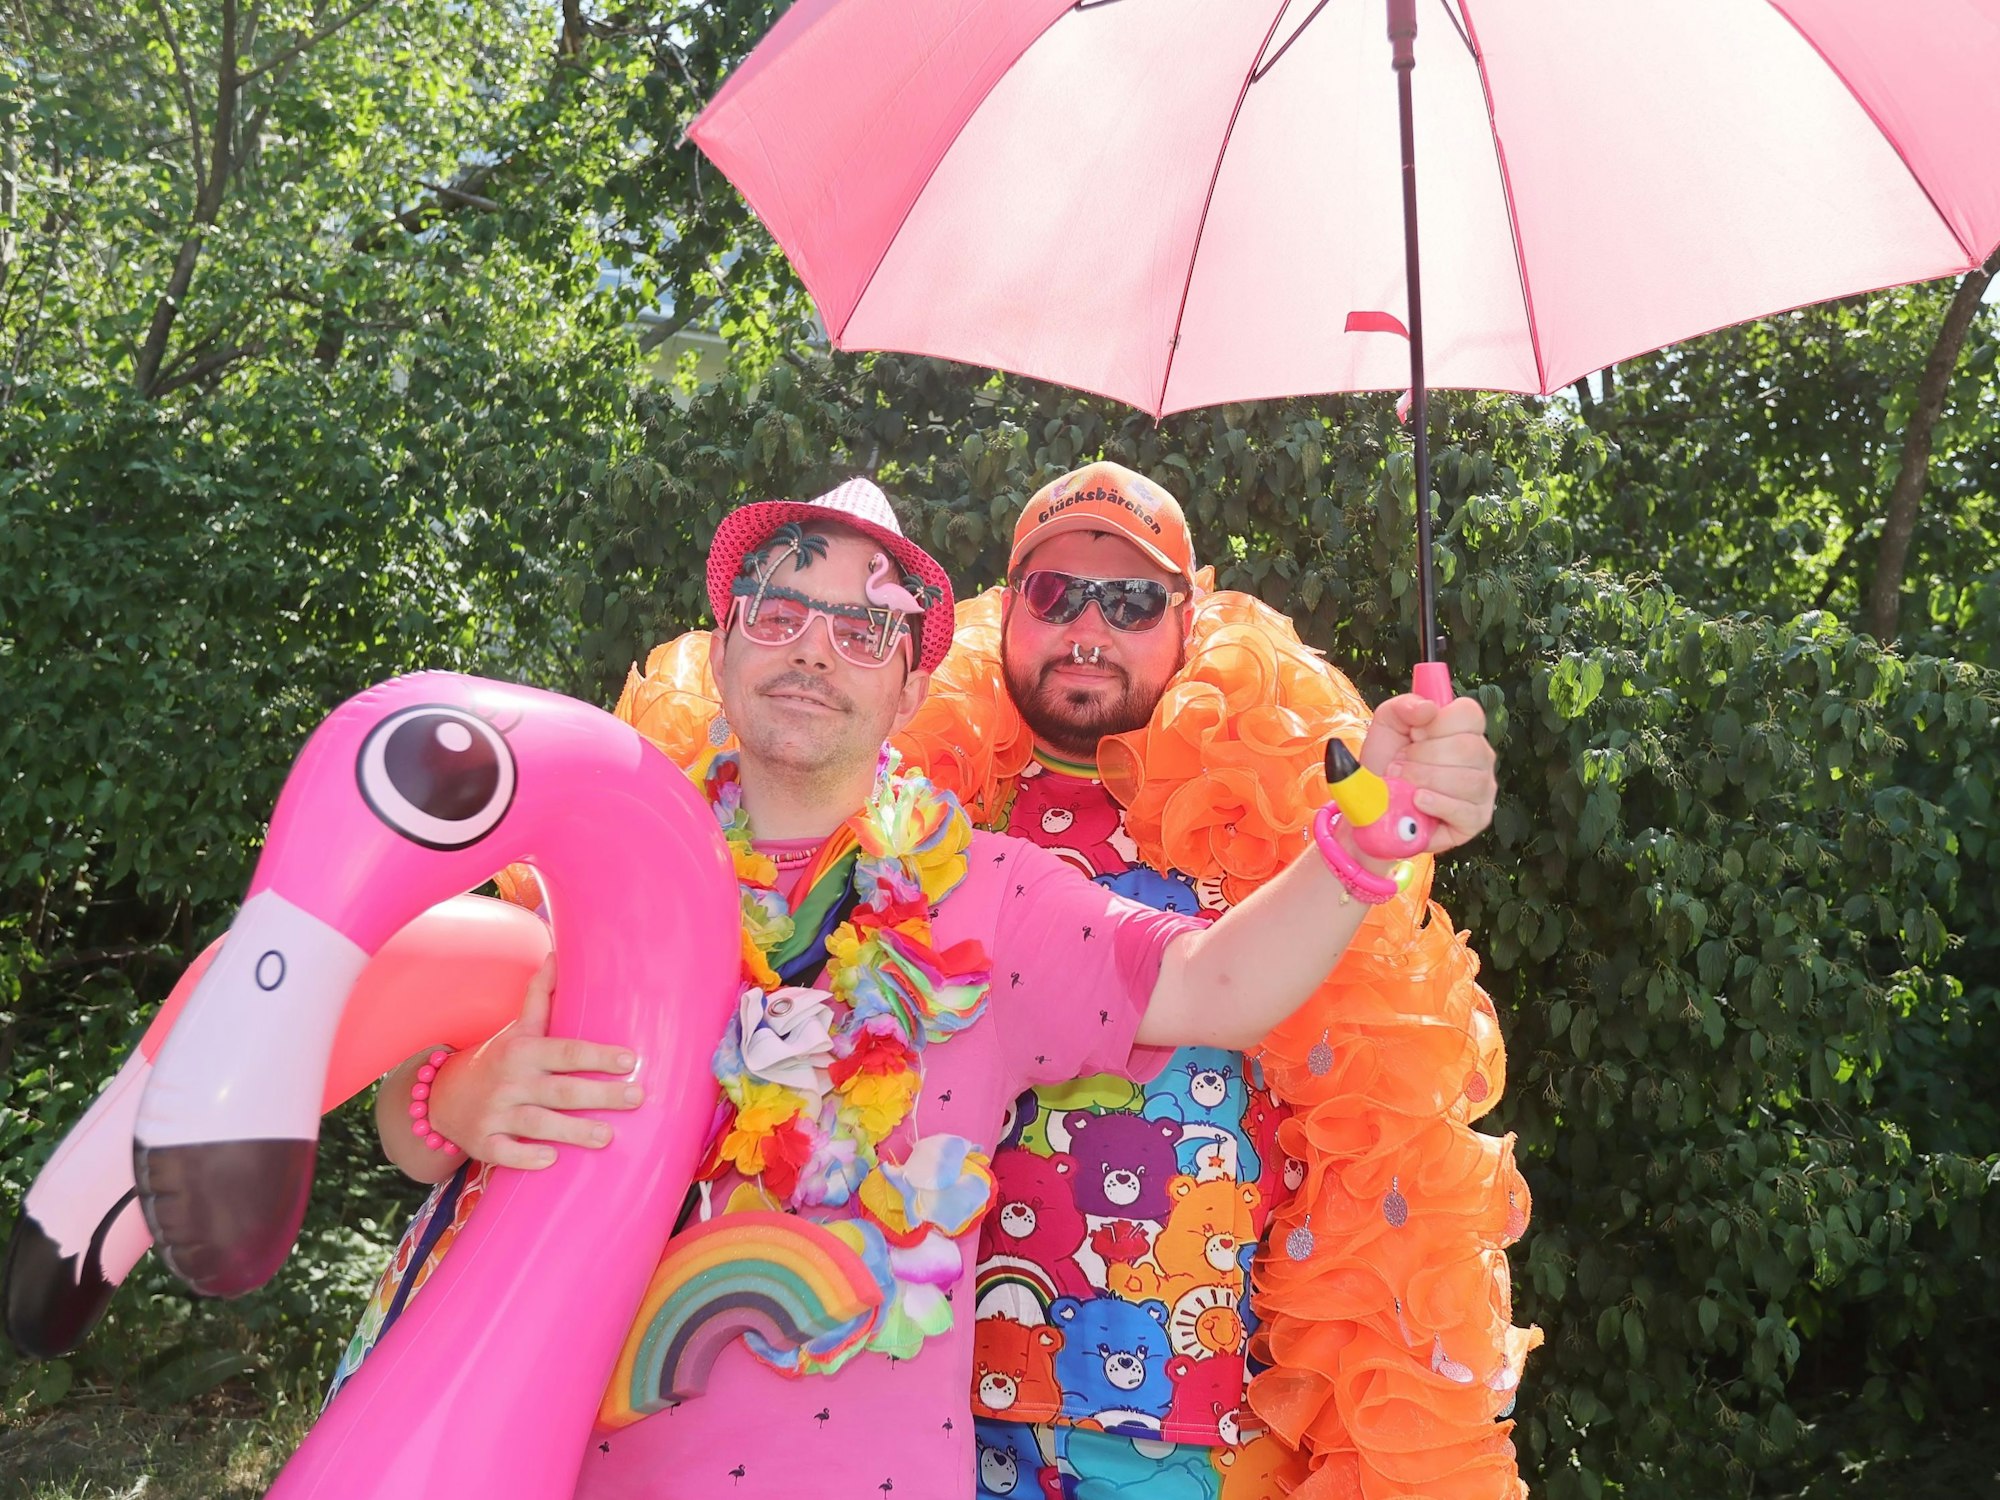 Zwei Menschen posieren zusammen. Sie haben einen aufblasbaren Flamingo, einen pinken Sonnenschirm an.